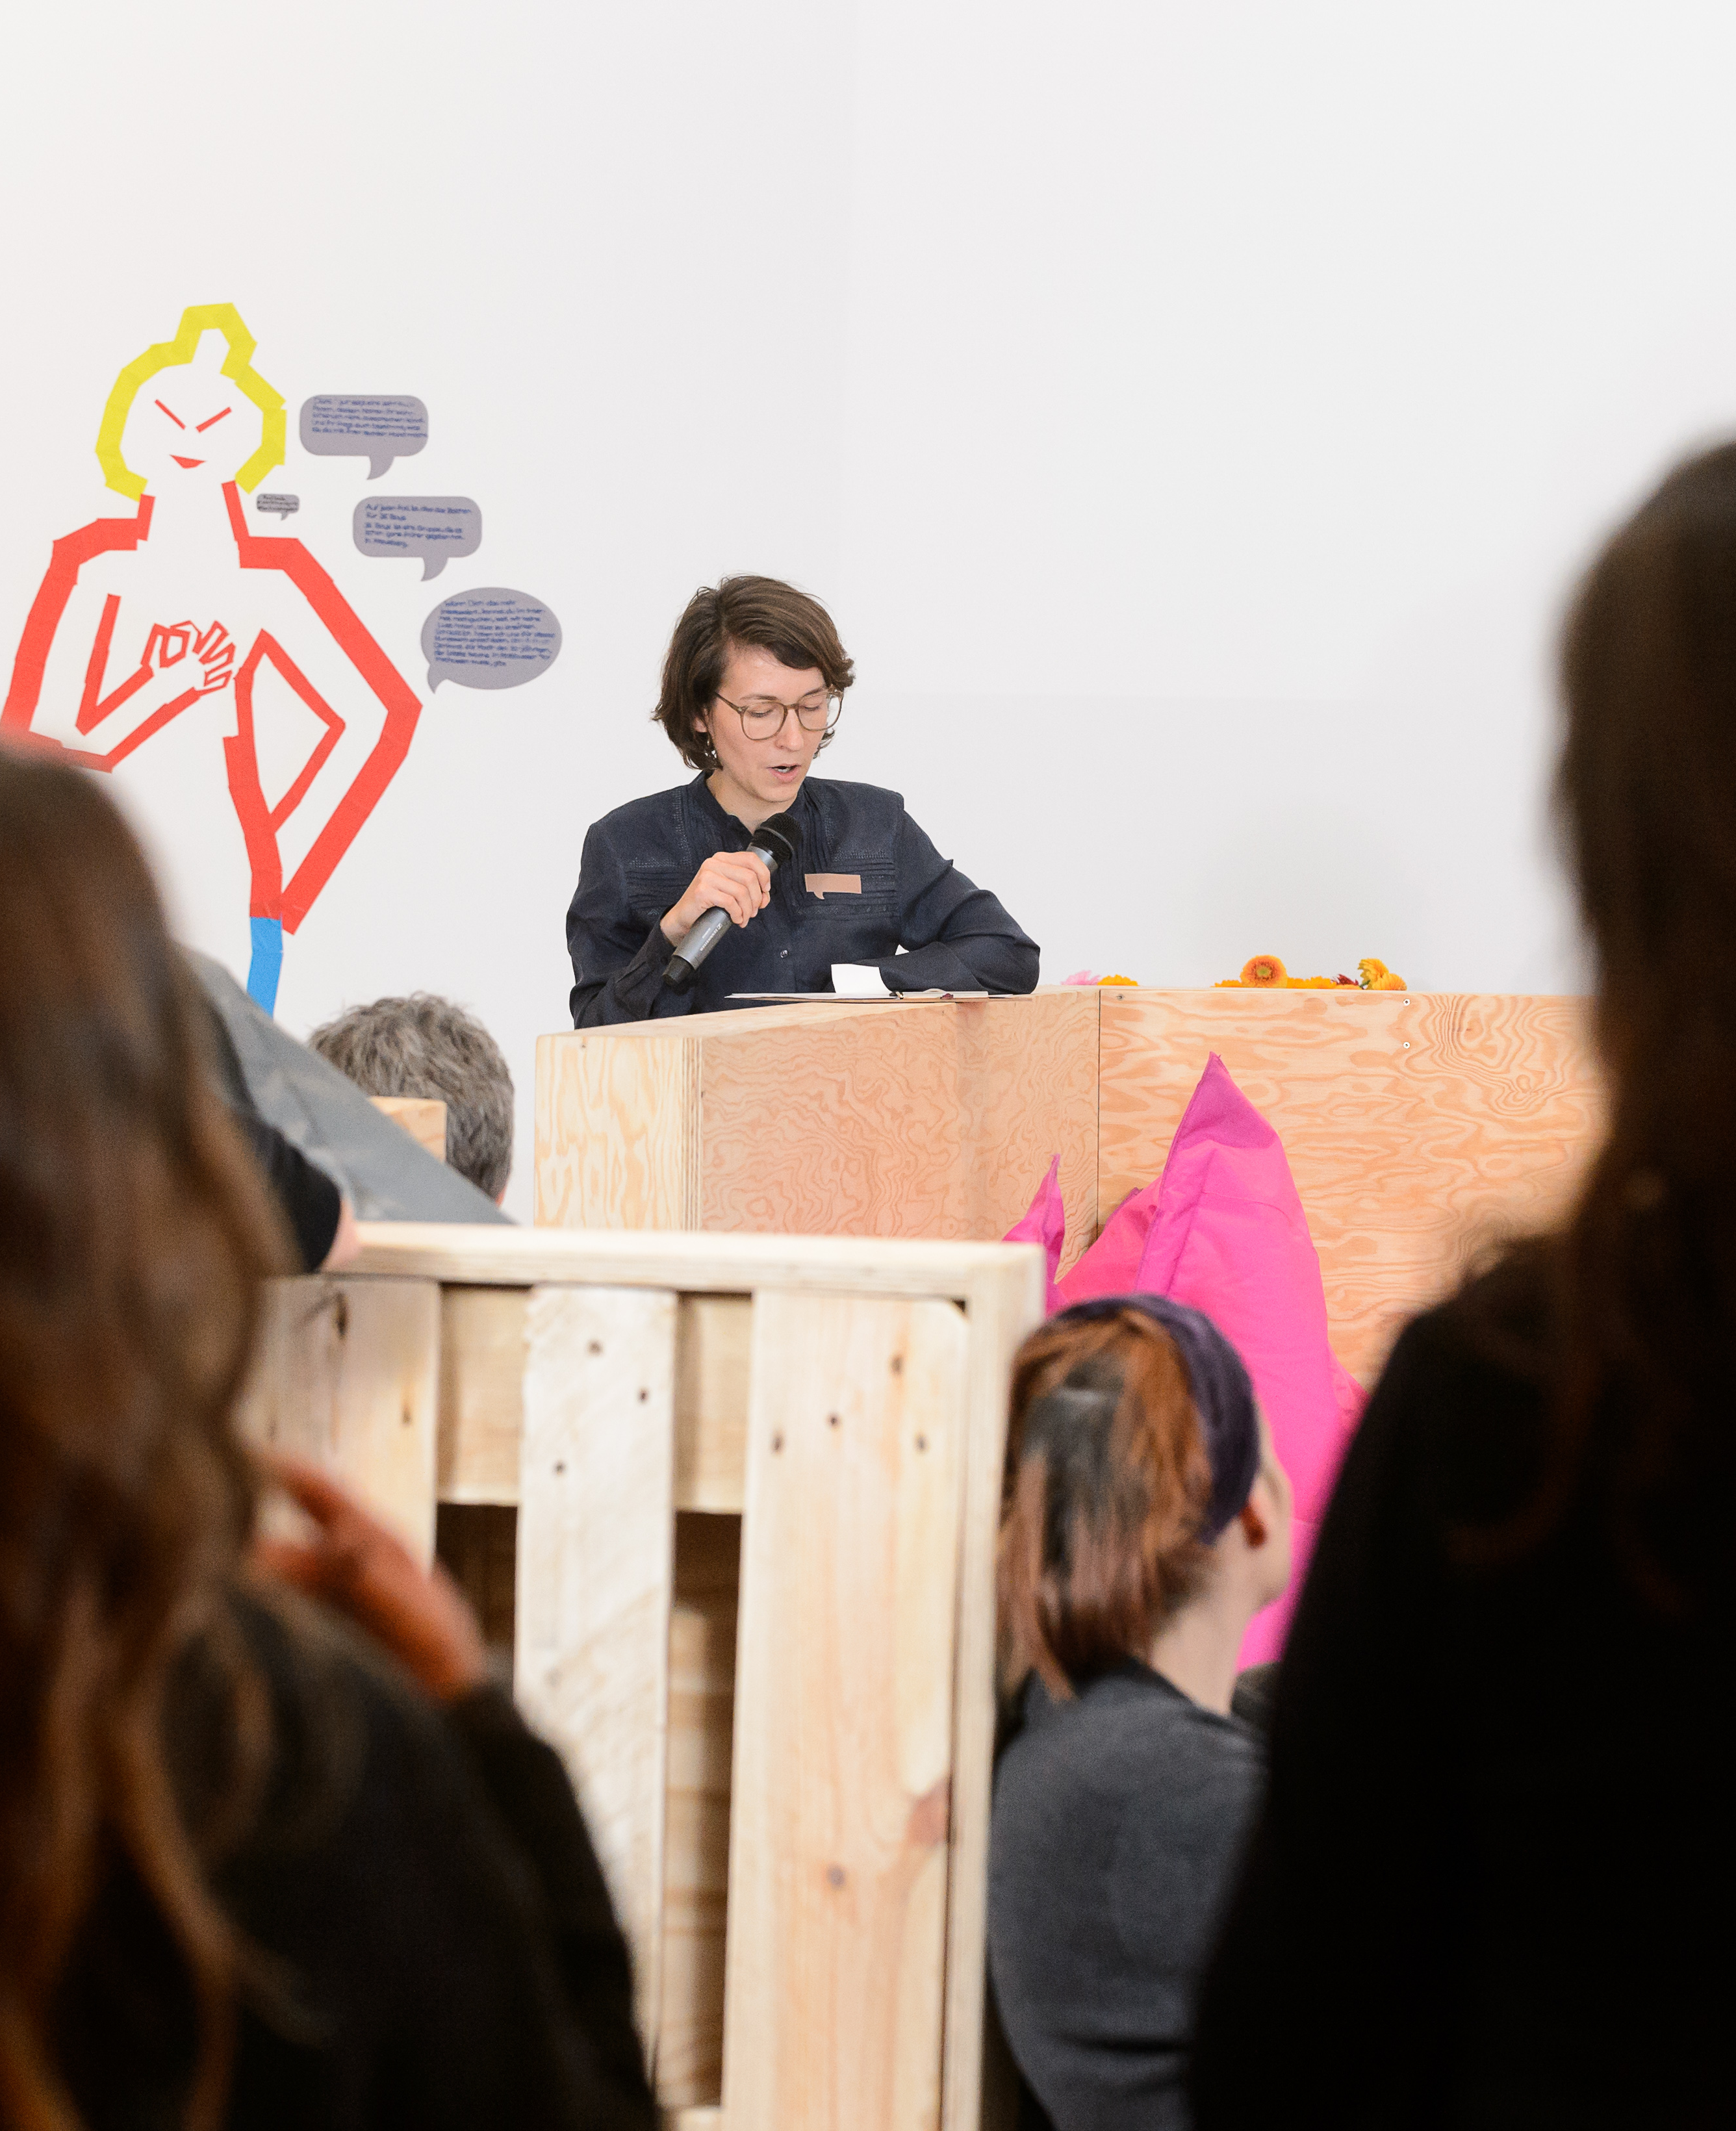 Finissage des Projektraums "Dada ist hier!" in der Berlinischen Galerie, 7.11.2016, Foto: Harry Schnitger